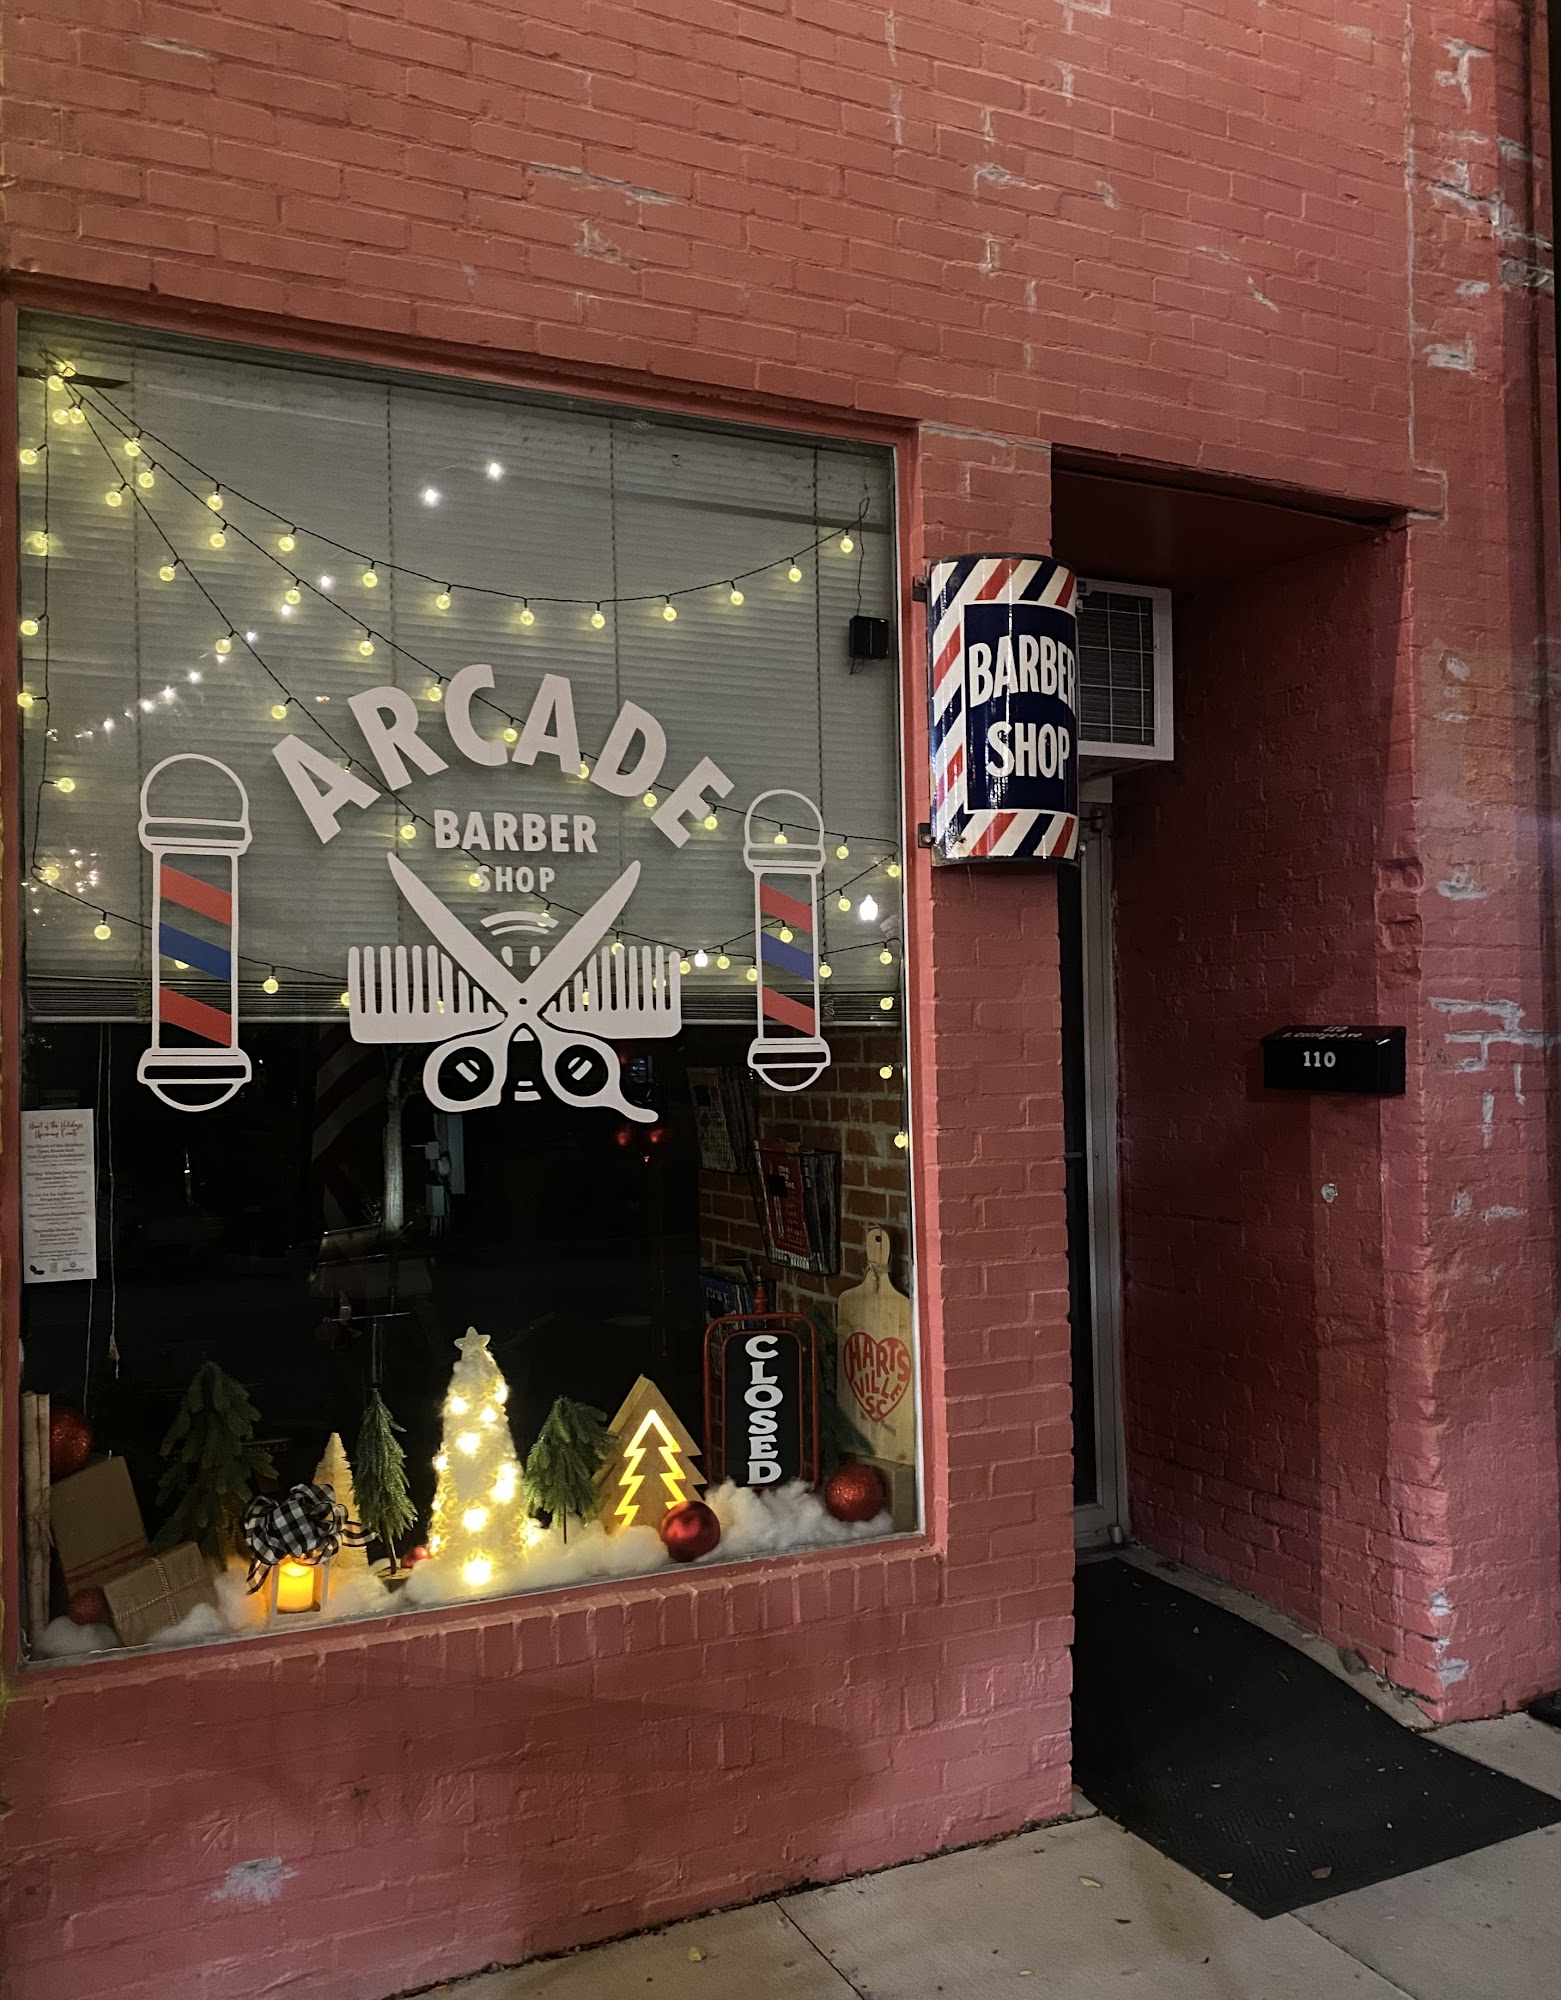 Arcade Barber Shop